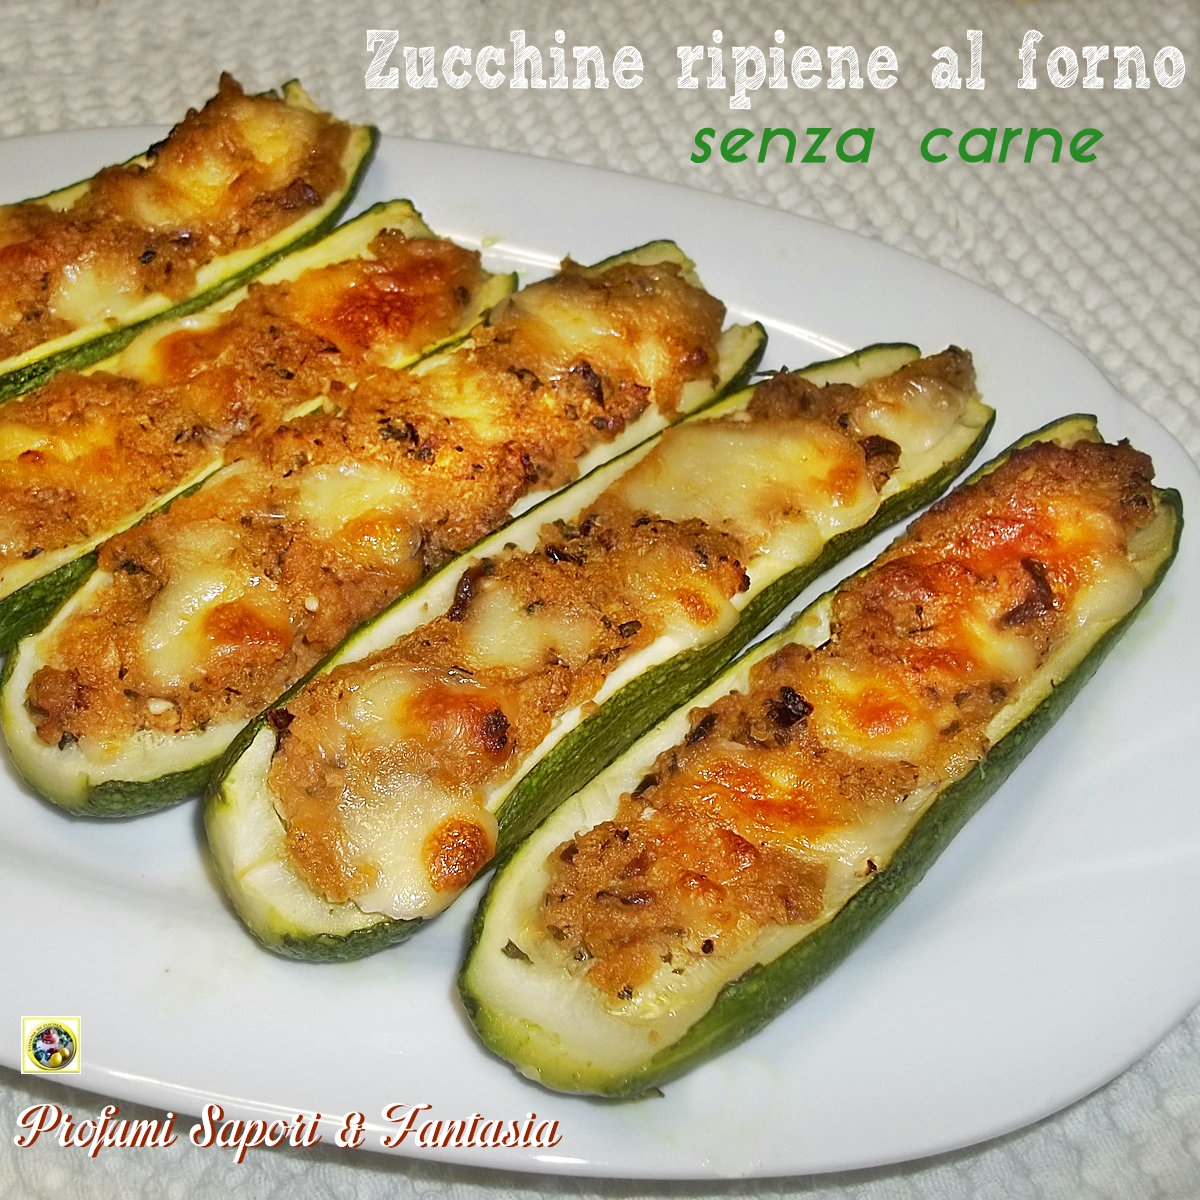 Zucchine ripiene al forno senza carne Blog Profumi Sapori & Fantasia